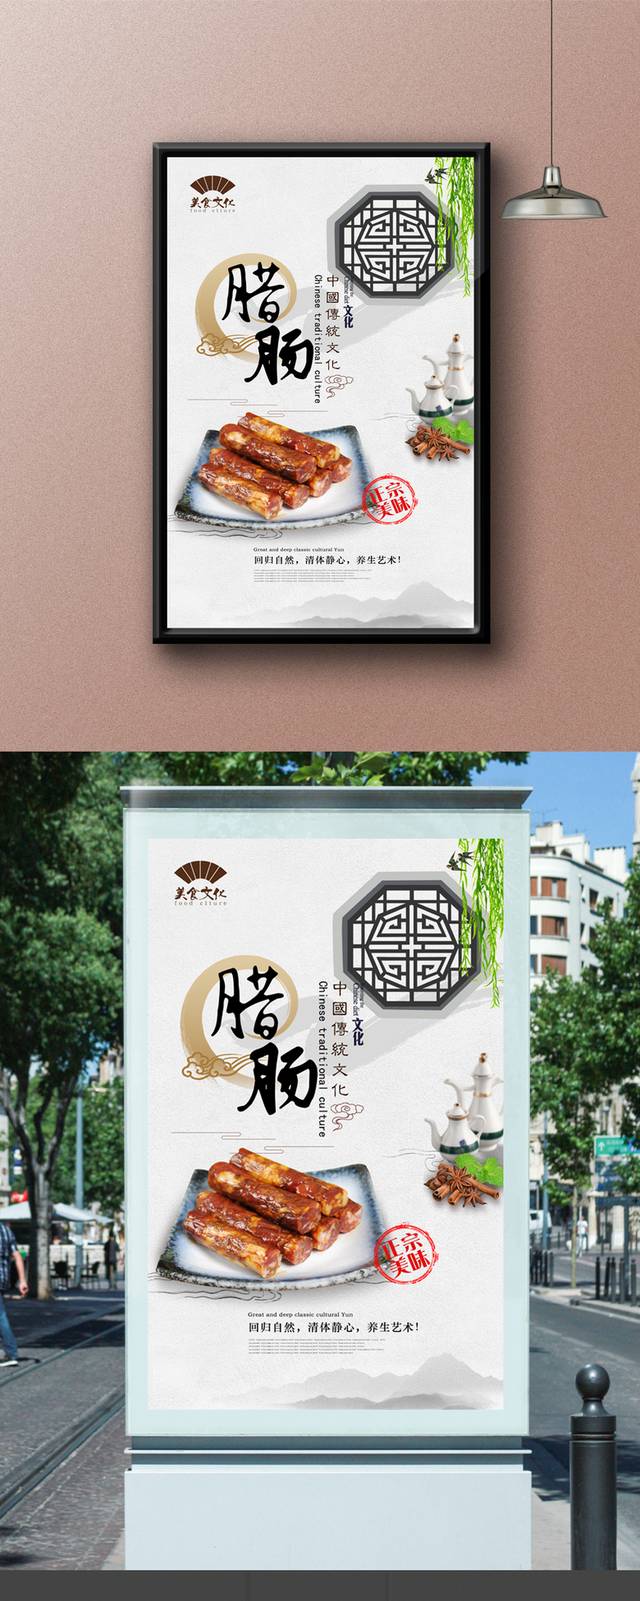 中式经典腊肠海报宣传设计